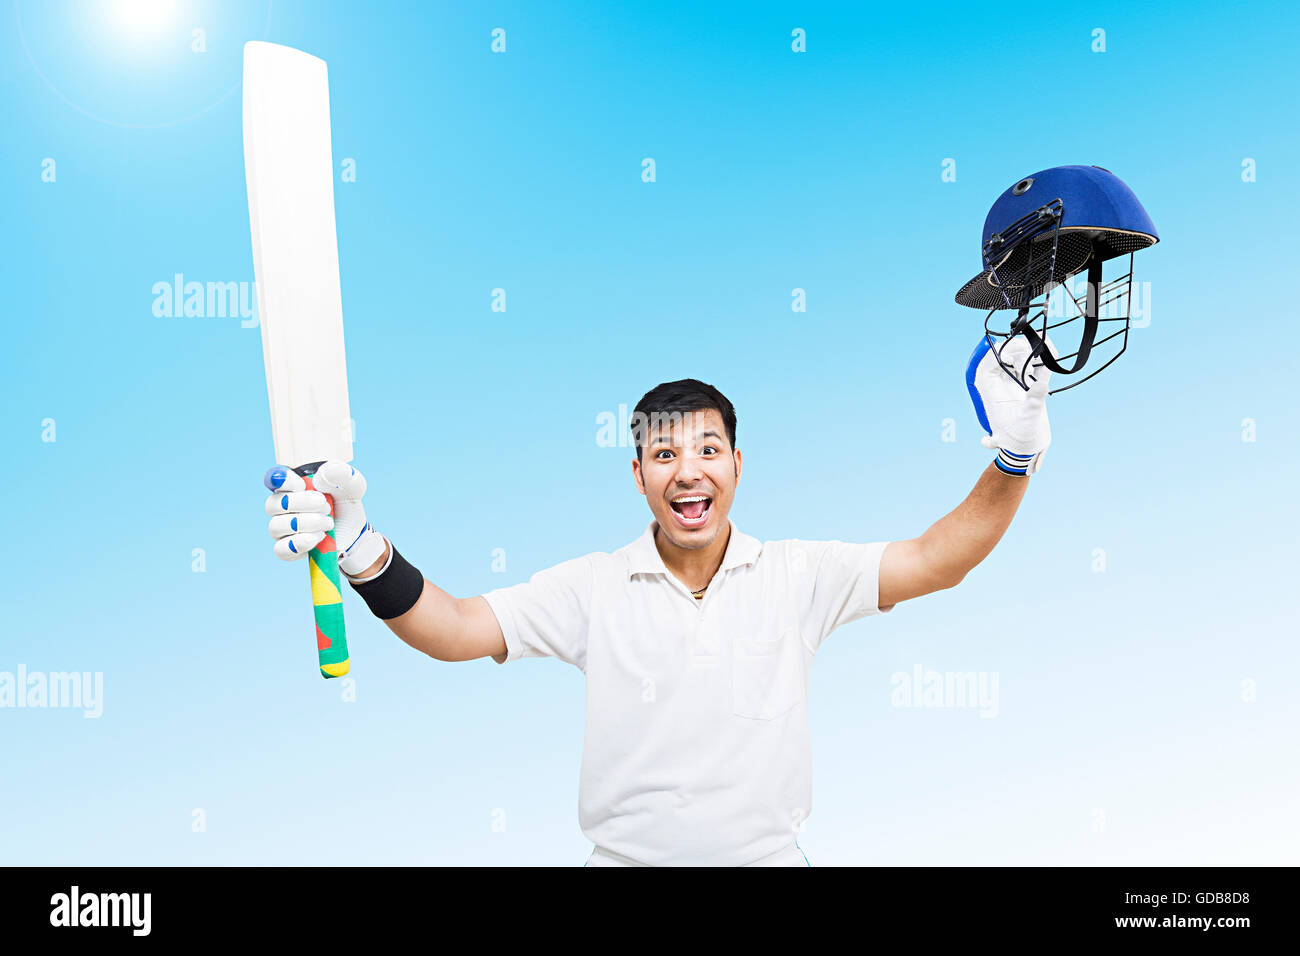 Criaient d'une jeune homme indien cricketer siècle succès gagnant jeu de sport cricket célébration Banque D'Images